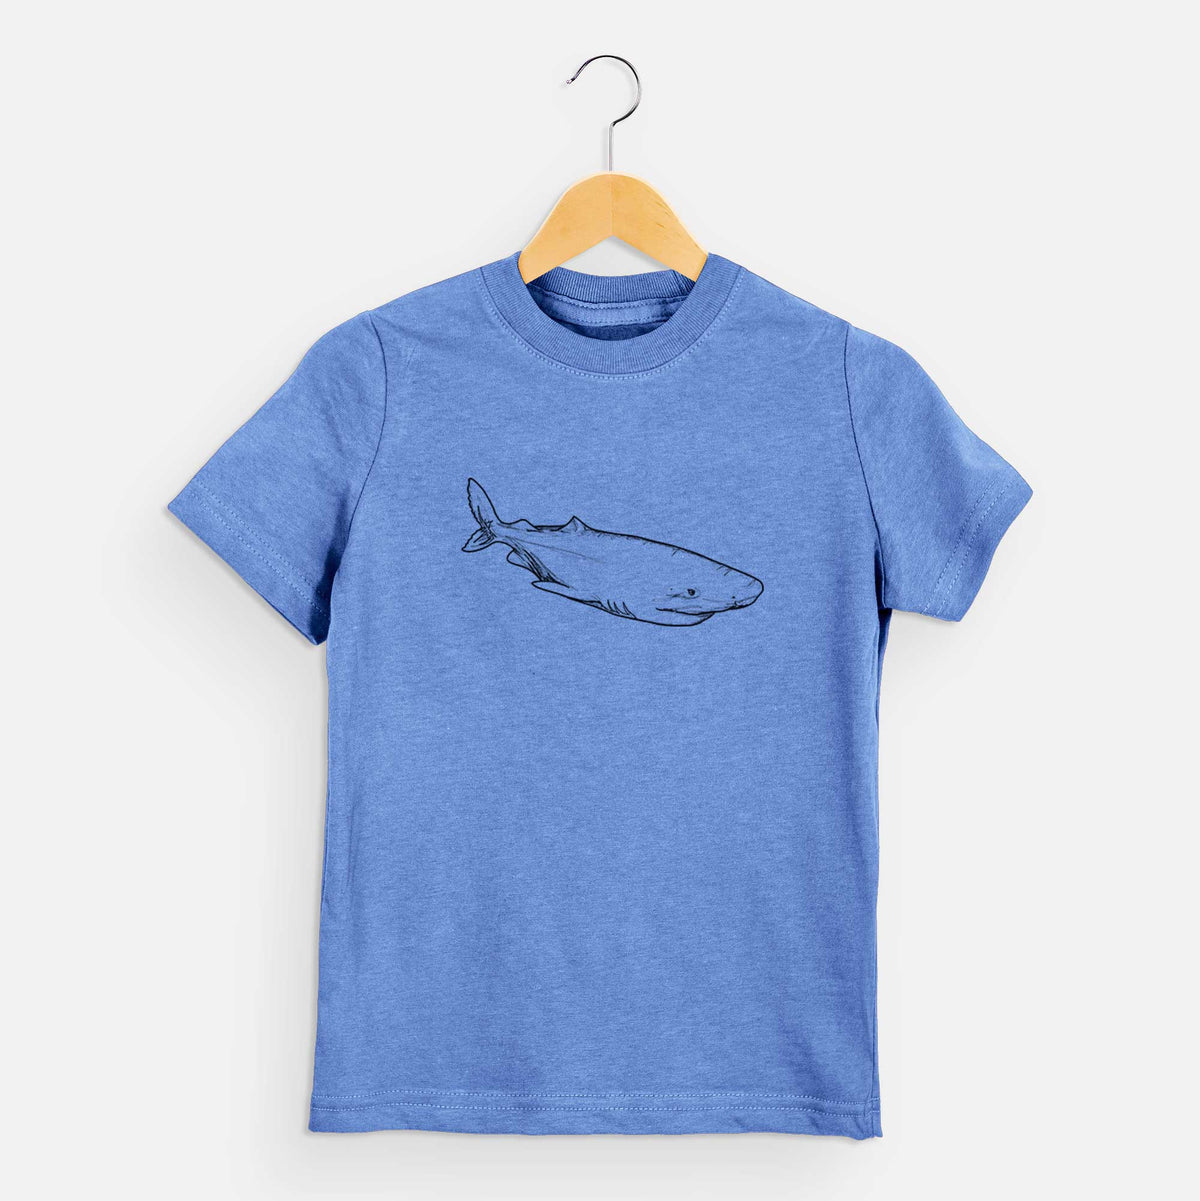 Greenland Shark - Kids Shirt